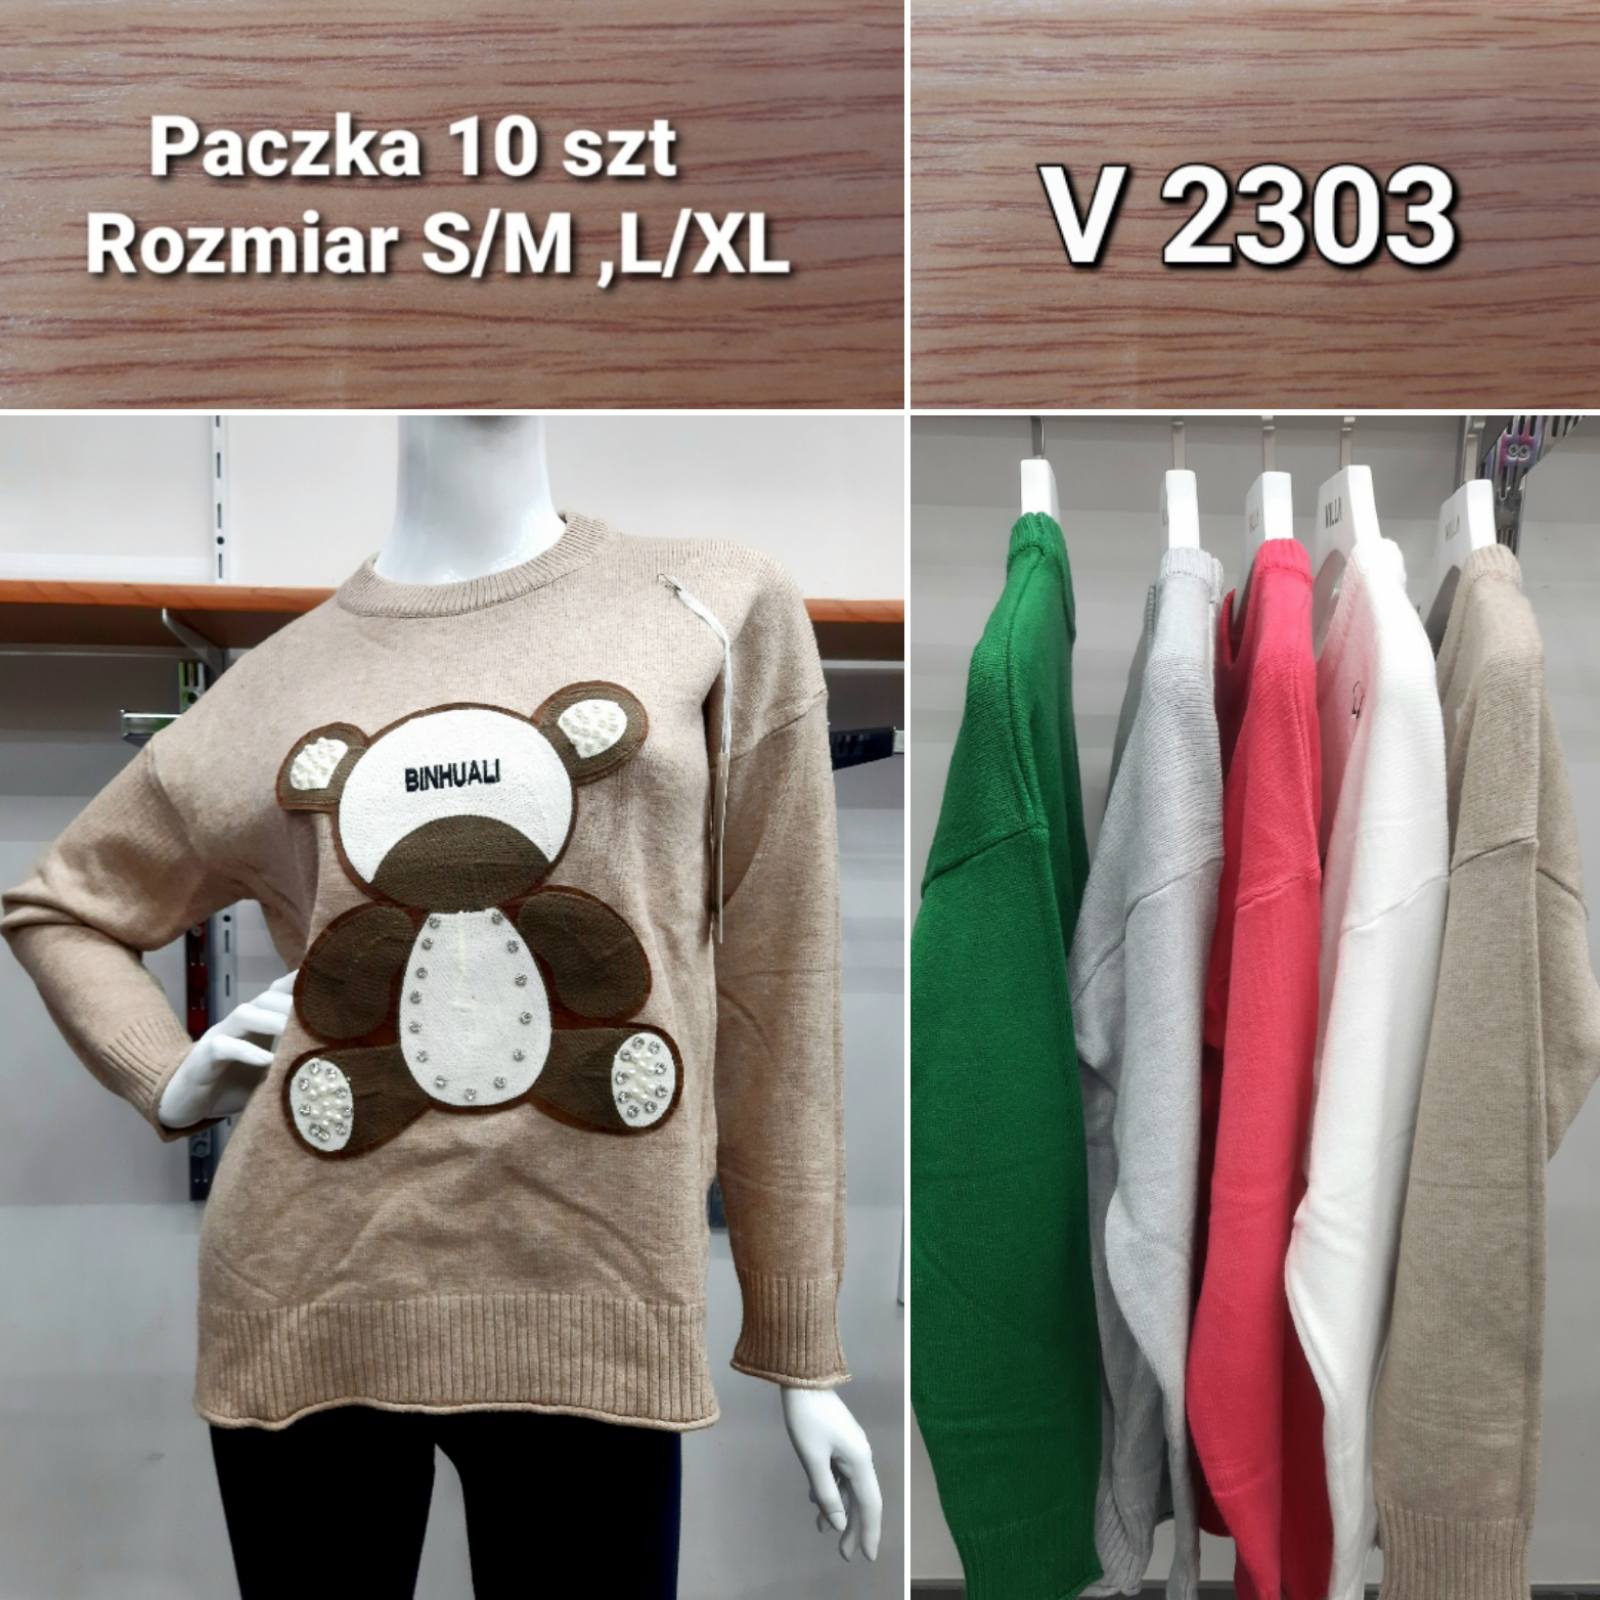 Swetry damskie Roz S/M-L/XL. Mix kolor Paczka 12szt